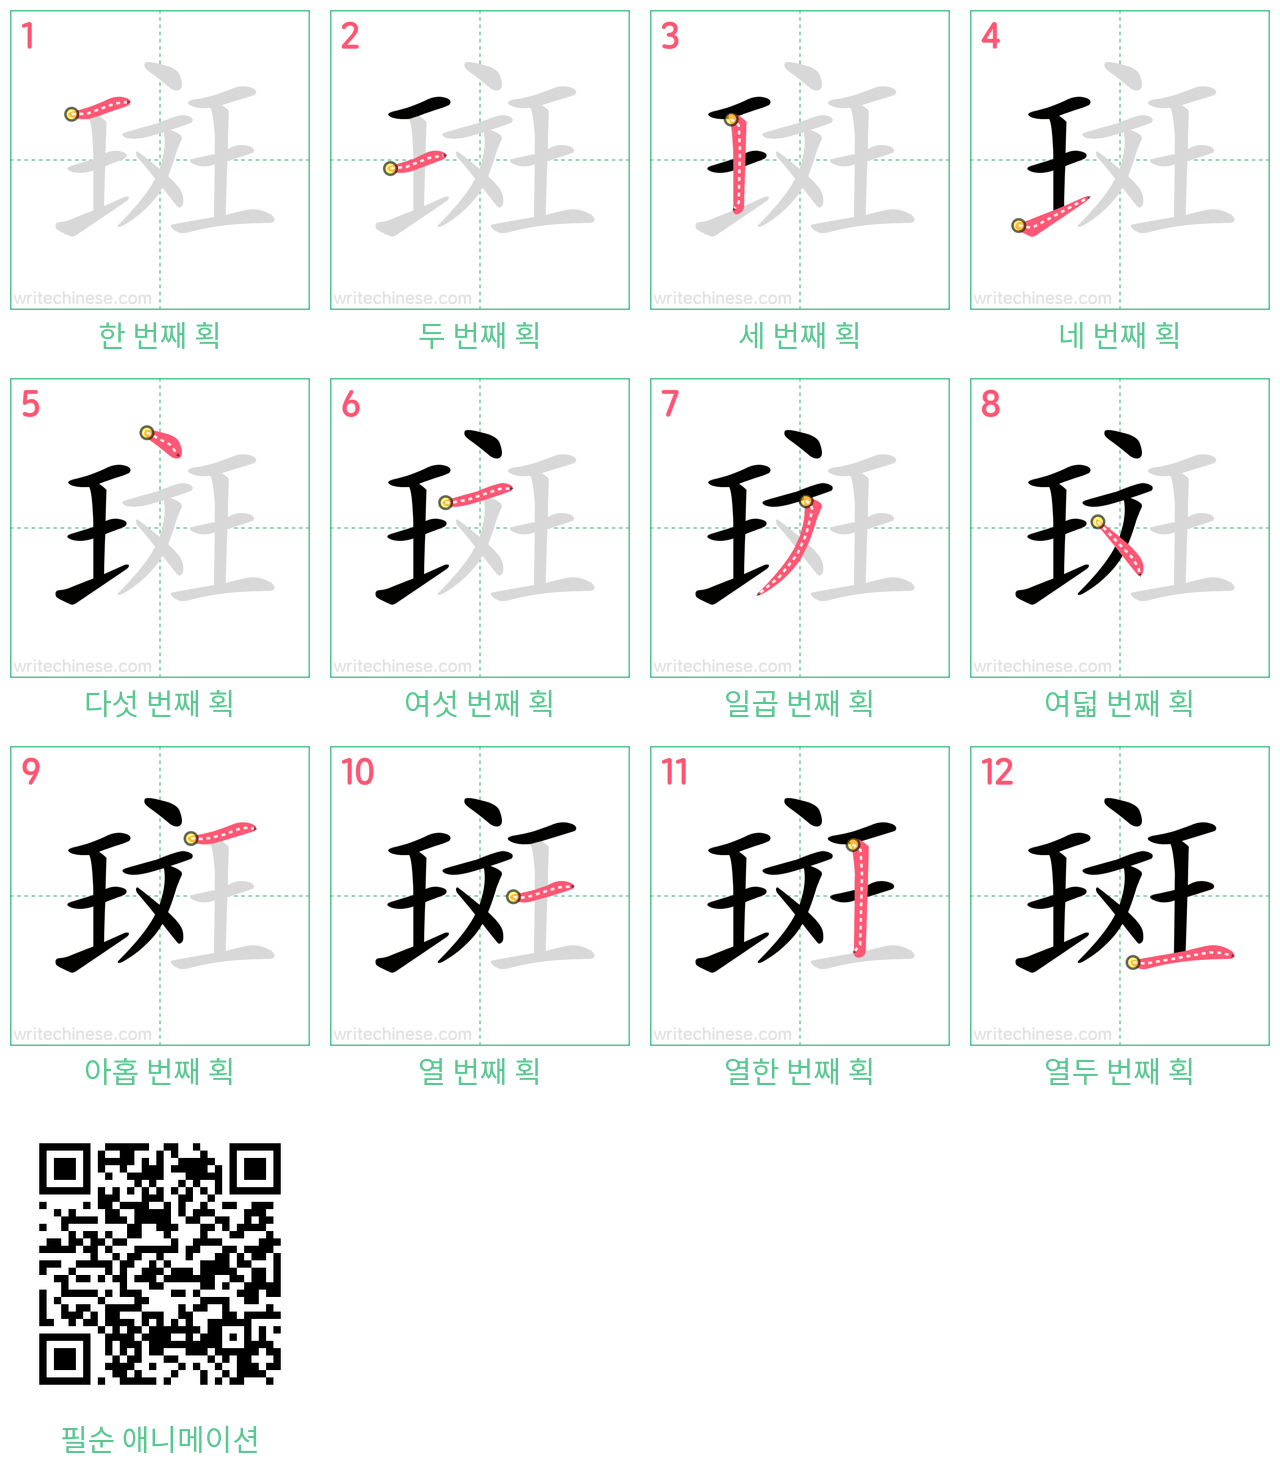 斑 step-by-step stroke order diagrams